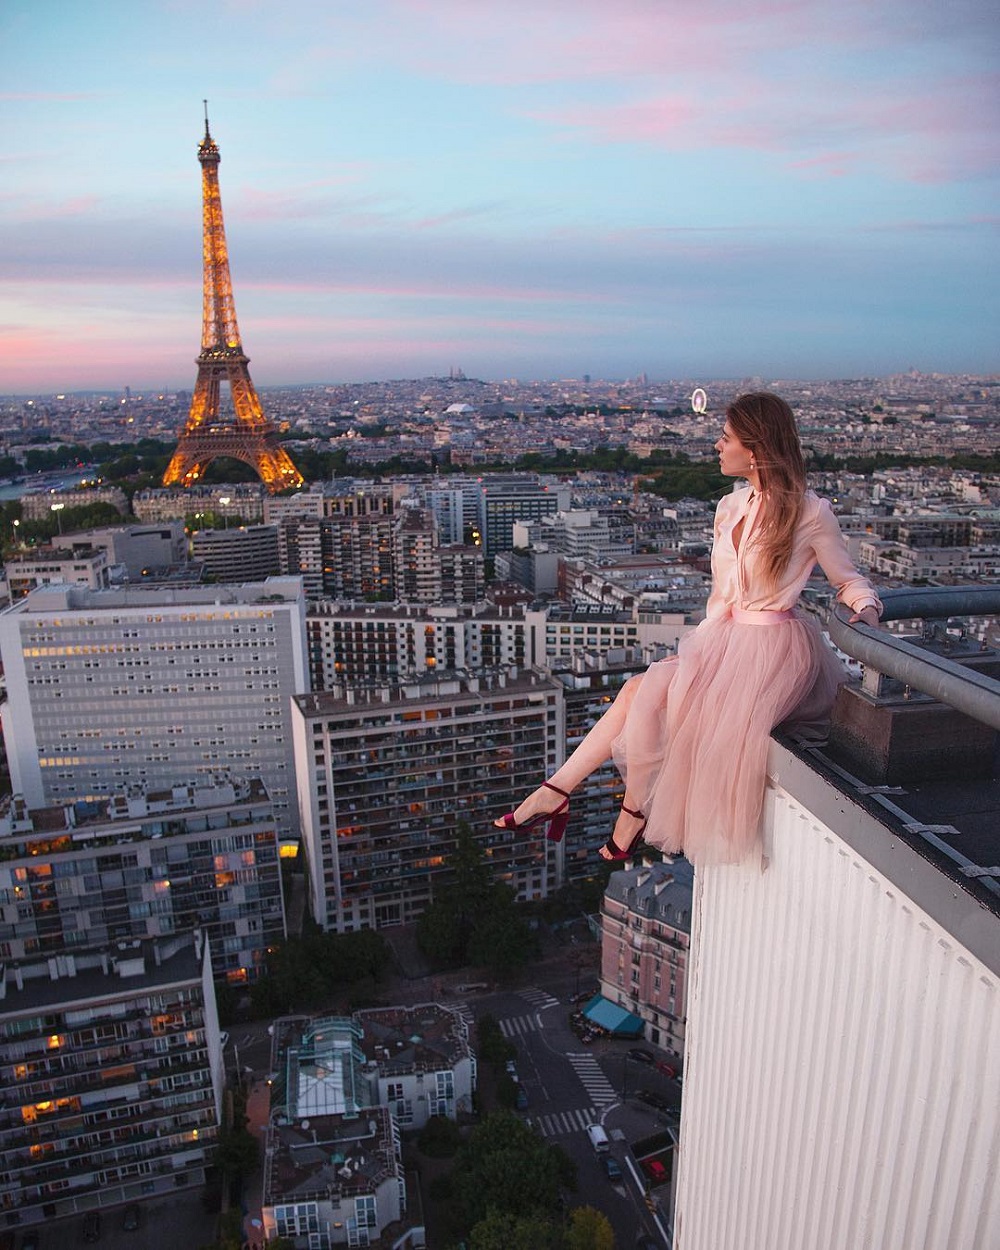 Slika na pariškom krovu